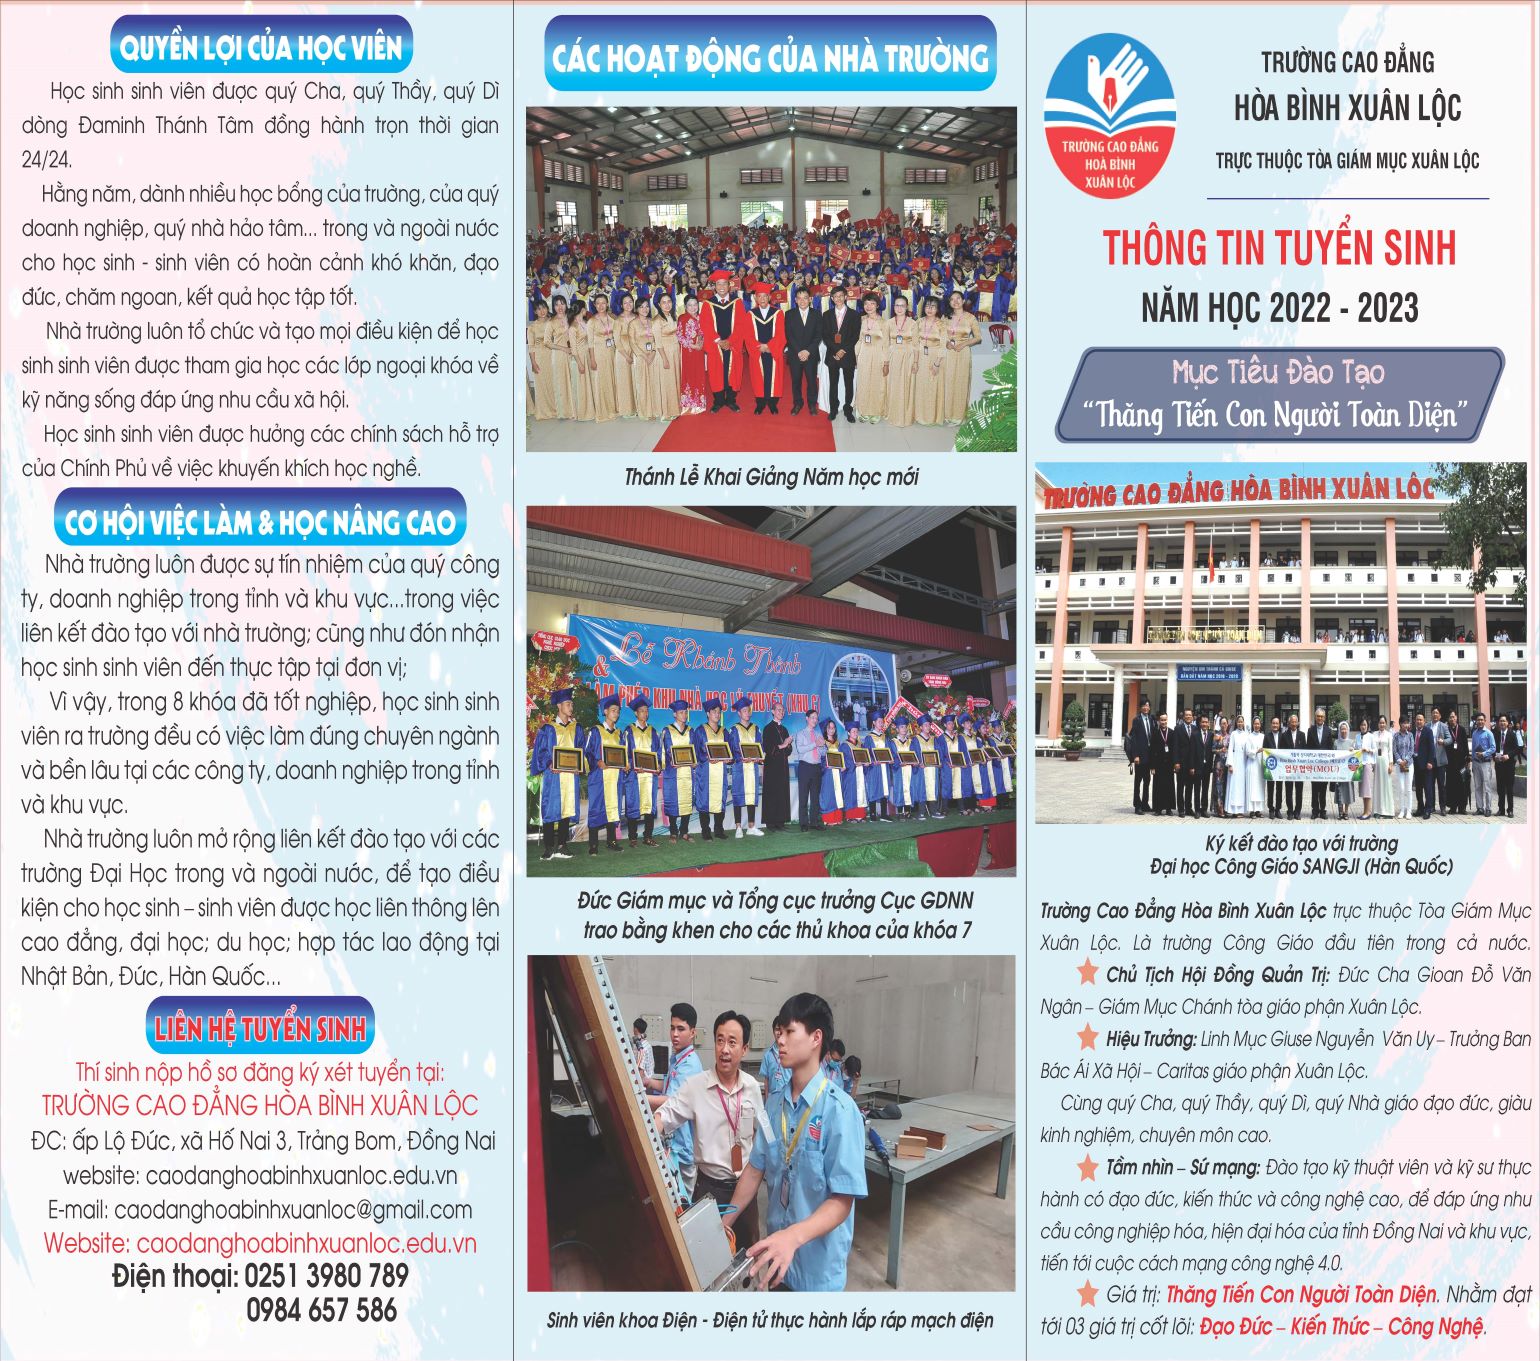 Trường Cao Đẳng Hòa Bình Xuân Lộc: Thư tuyển sinh năm học 2022-2023